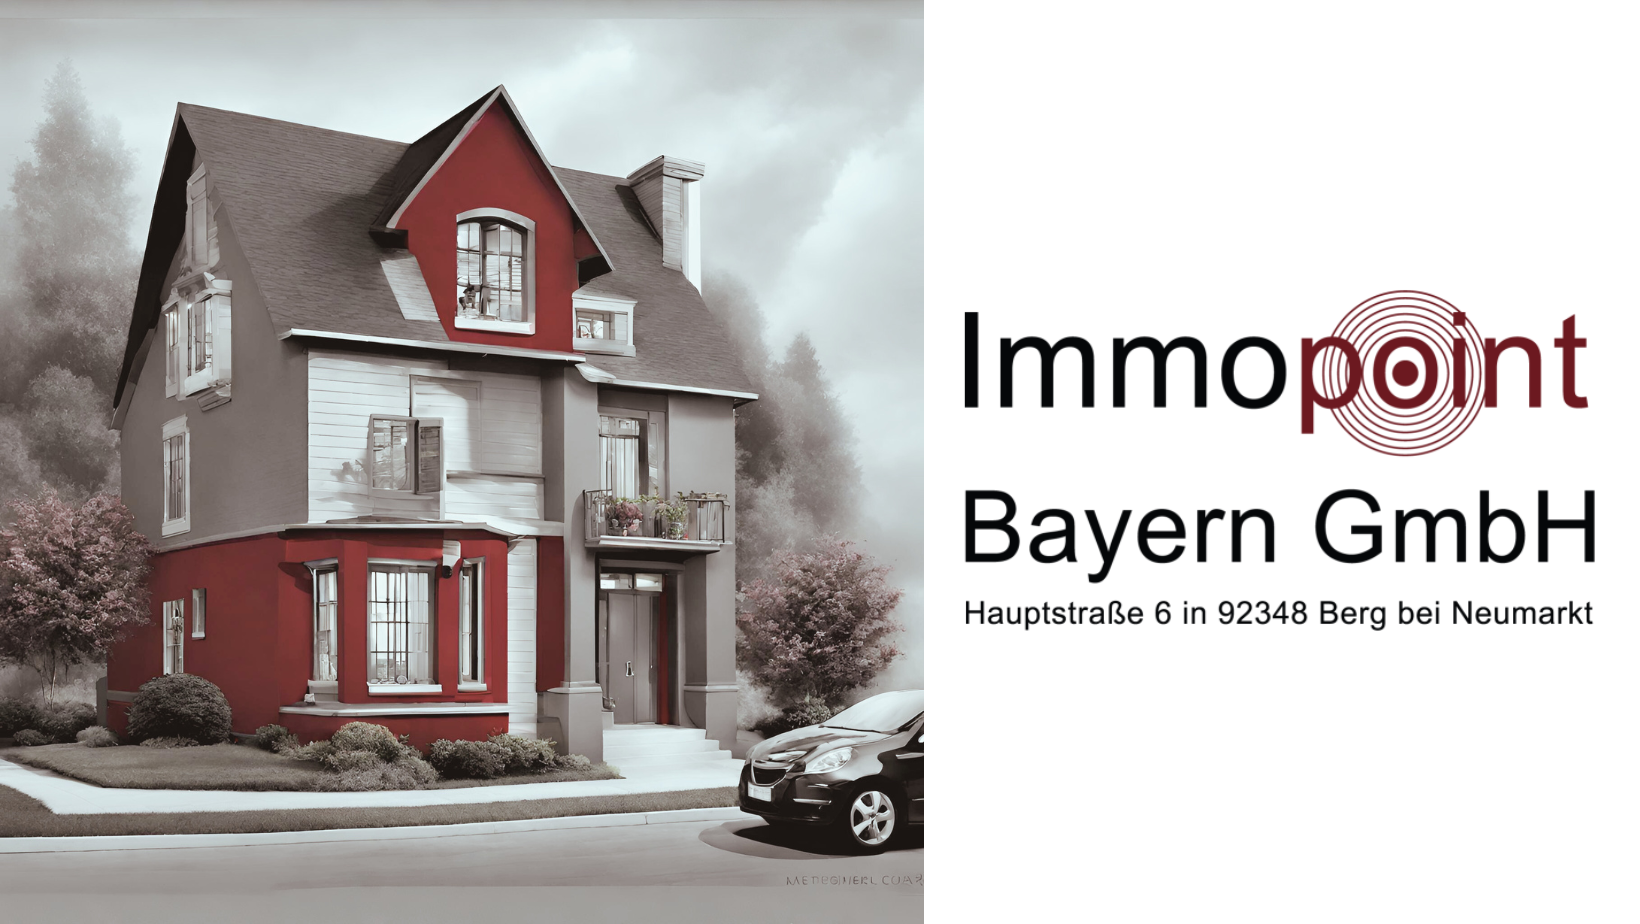 Bilder Immopoint Bayern GmbH | Immobilienmakler